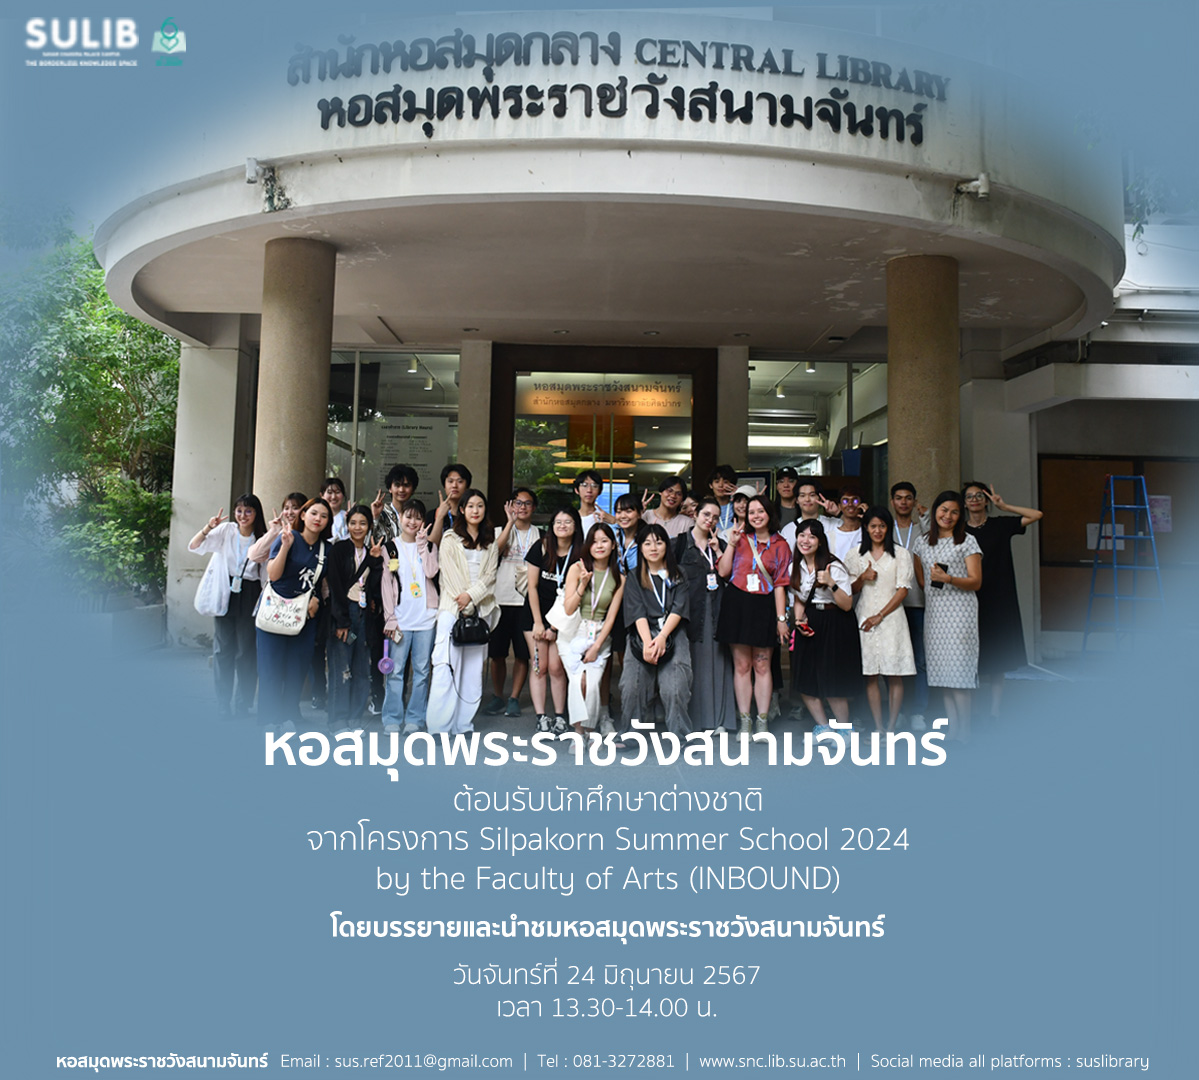 หอสมุดพระราชวังสนามจันทร์ ต้อนรับนักศึกษาต่างชาติ จากโครงการ Silpakorn Summer School 2024 by the Faculty of Arts (INBOUND)